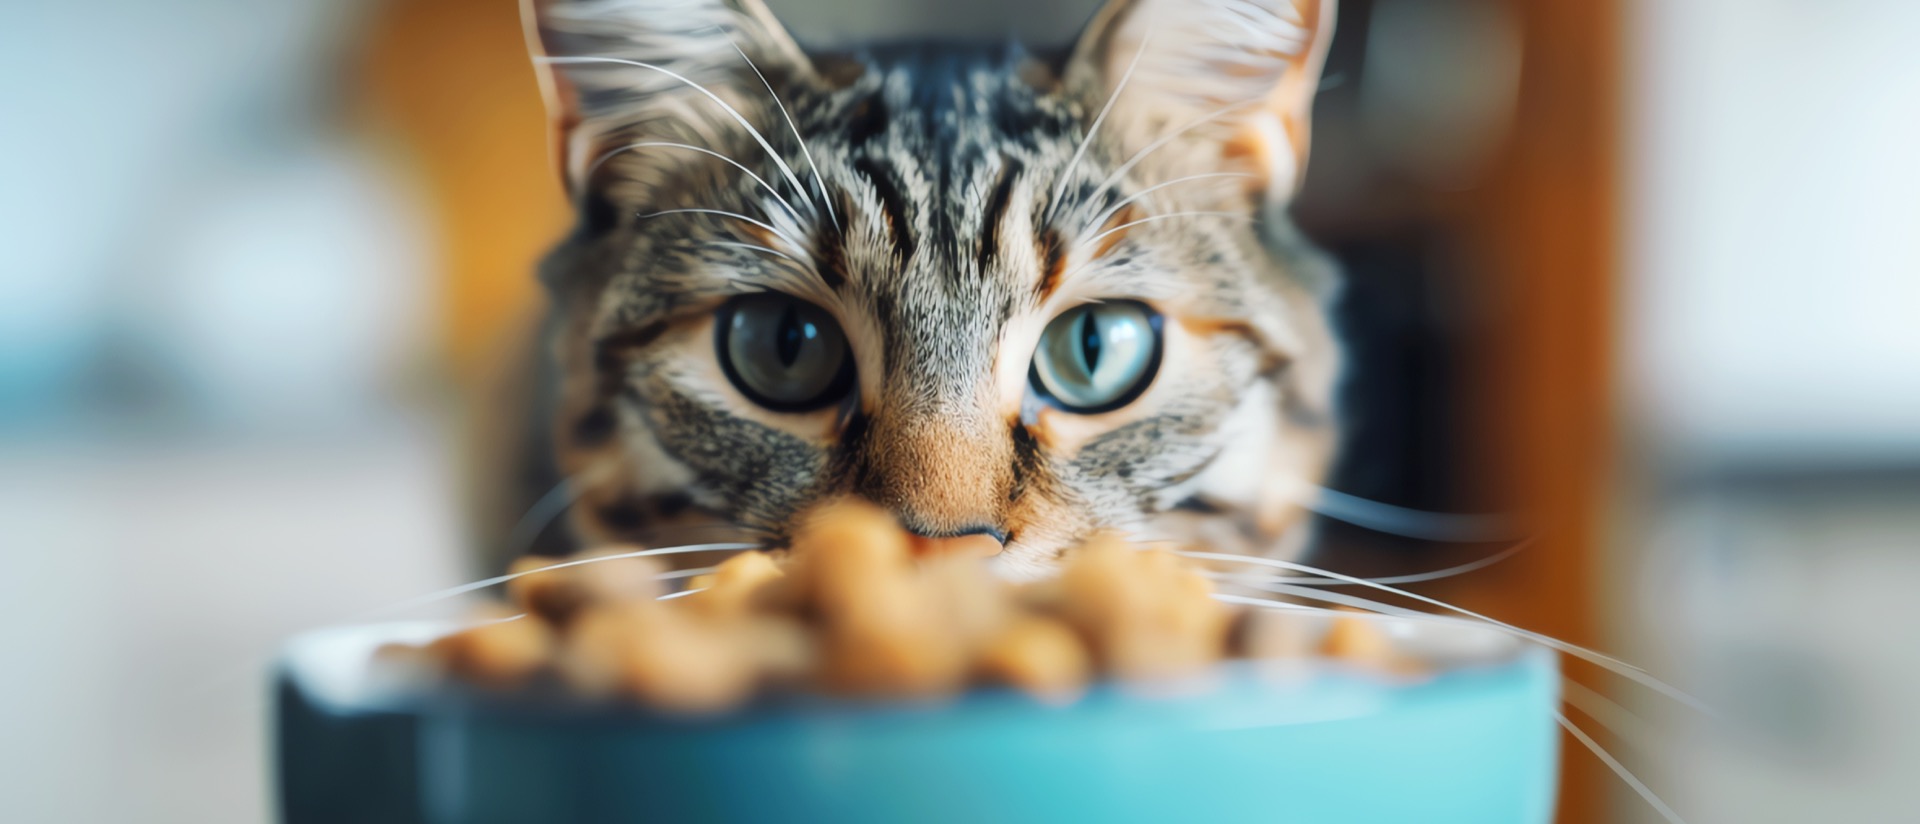 Les chats vont-ils être les premiers à manger de la viande de labo ? © Frédéric Prochasson, Adobe Stock 